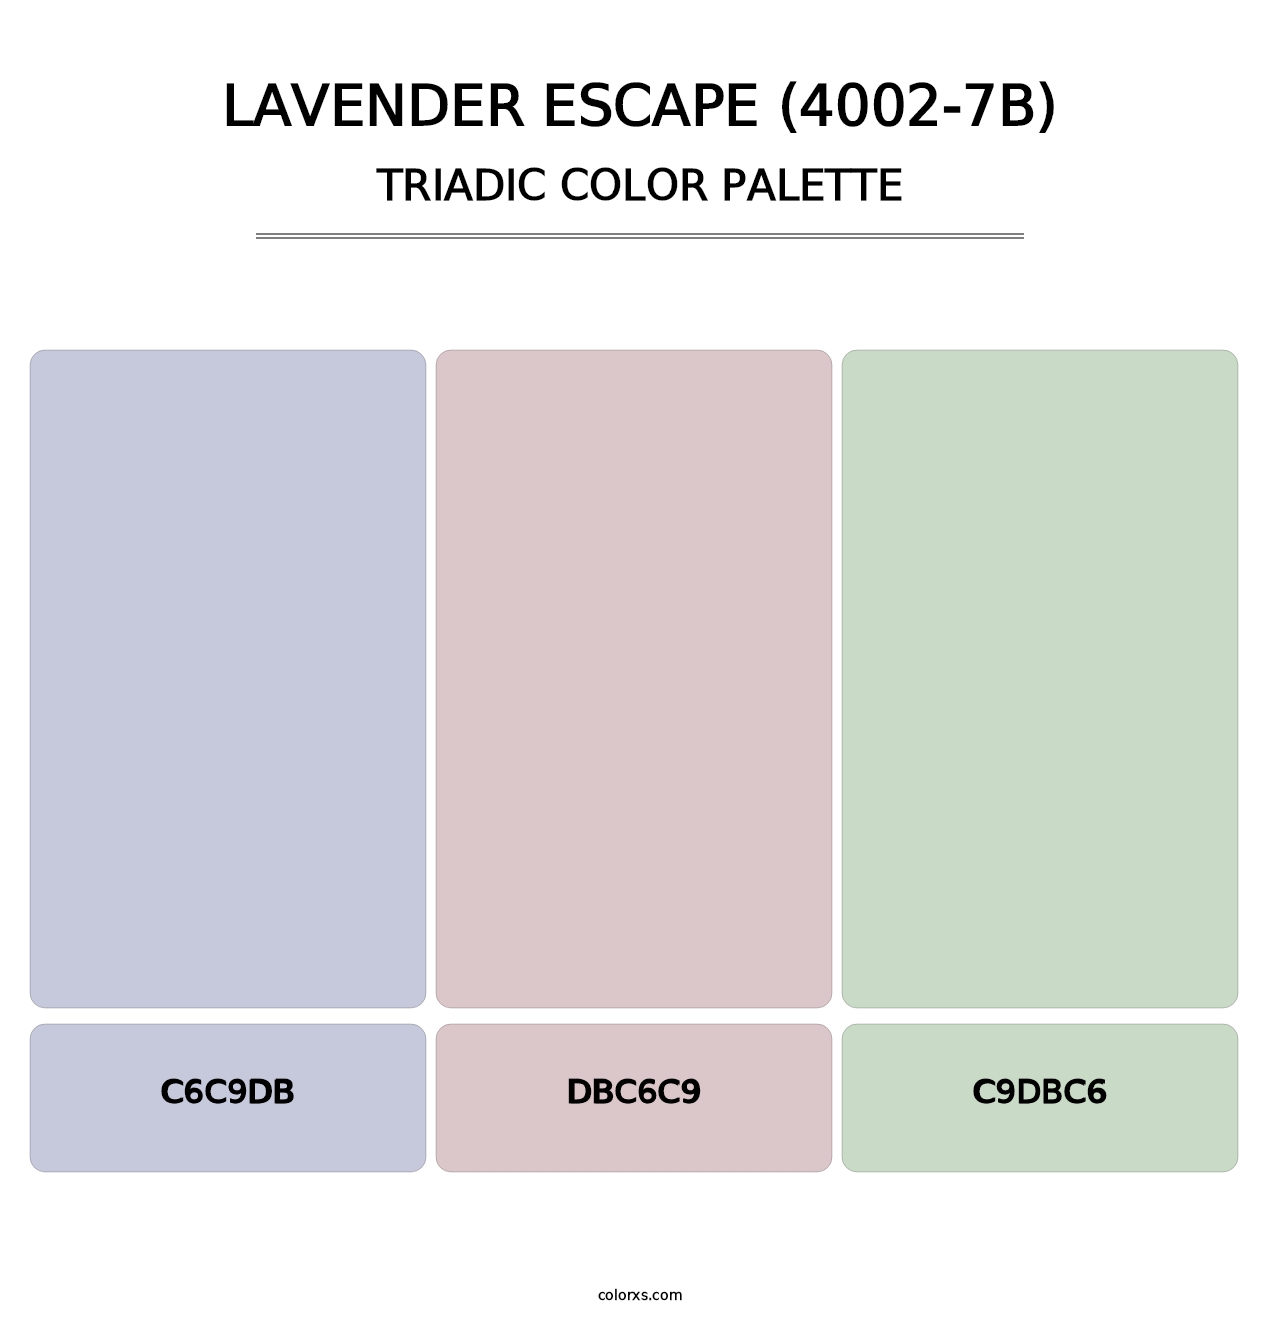 Lavender Escape (4002-7B) - Triadic Color Palette